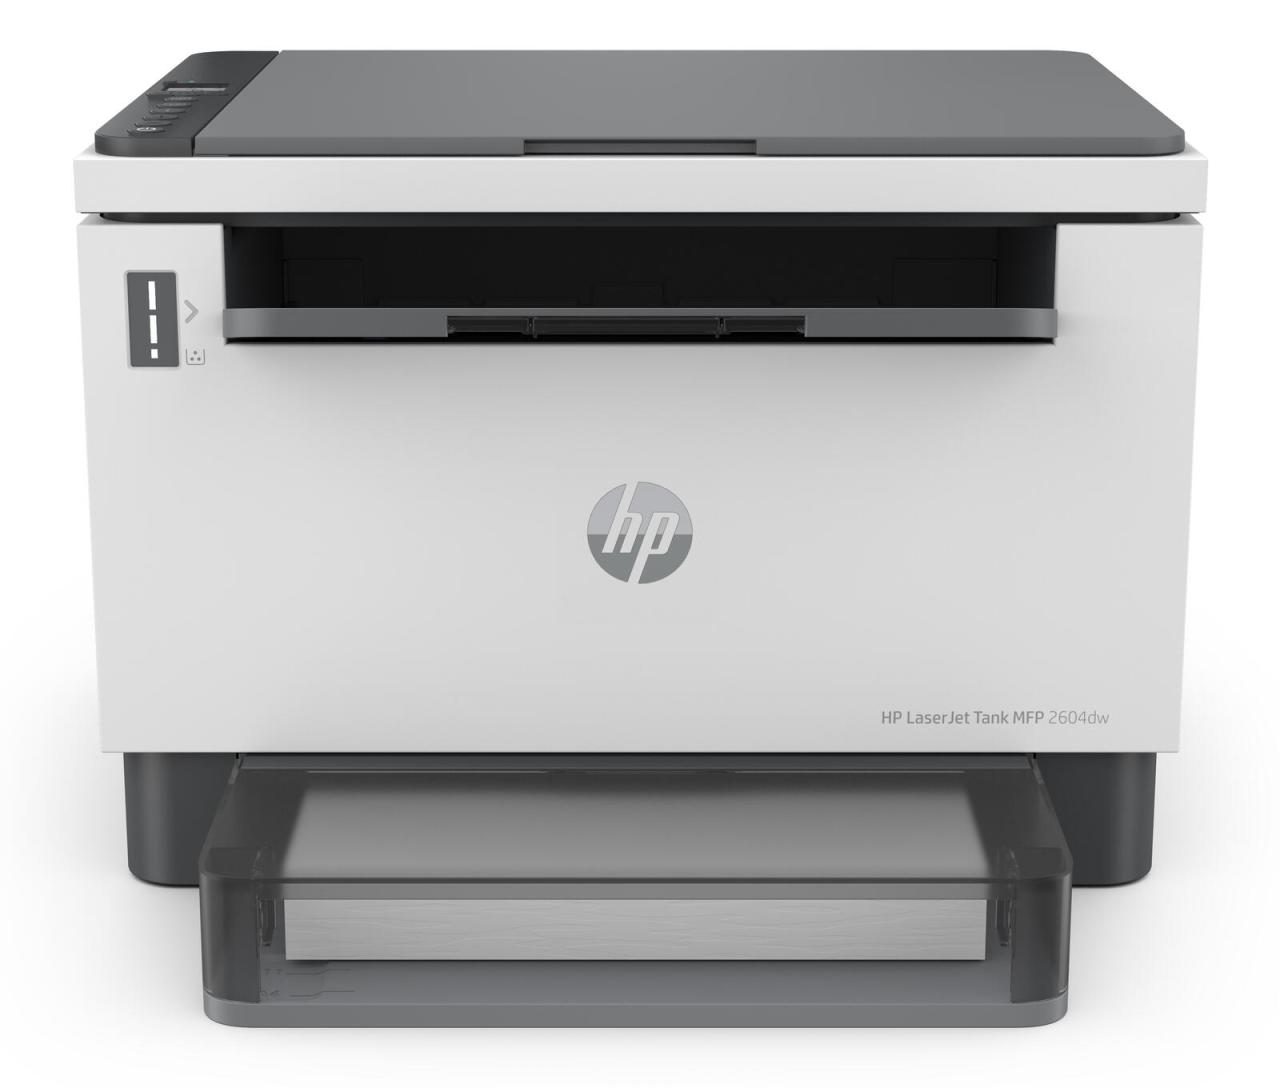 HP LaserJet Tank MFP 2604dw Laserdrucker s/w von HP Inc.